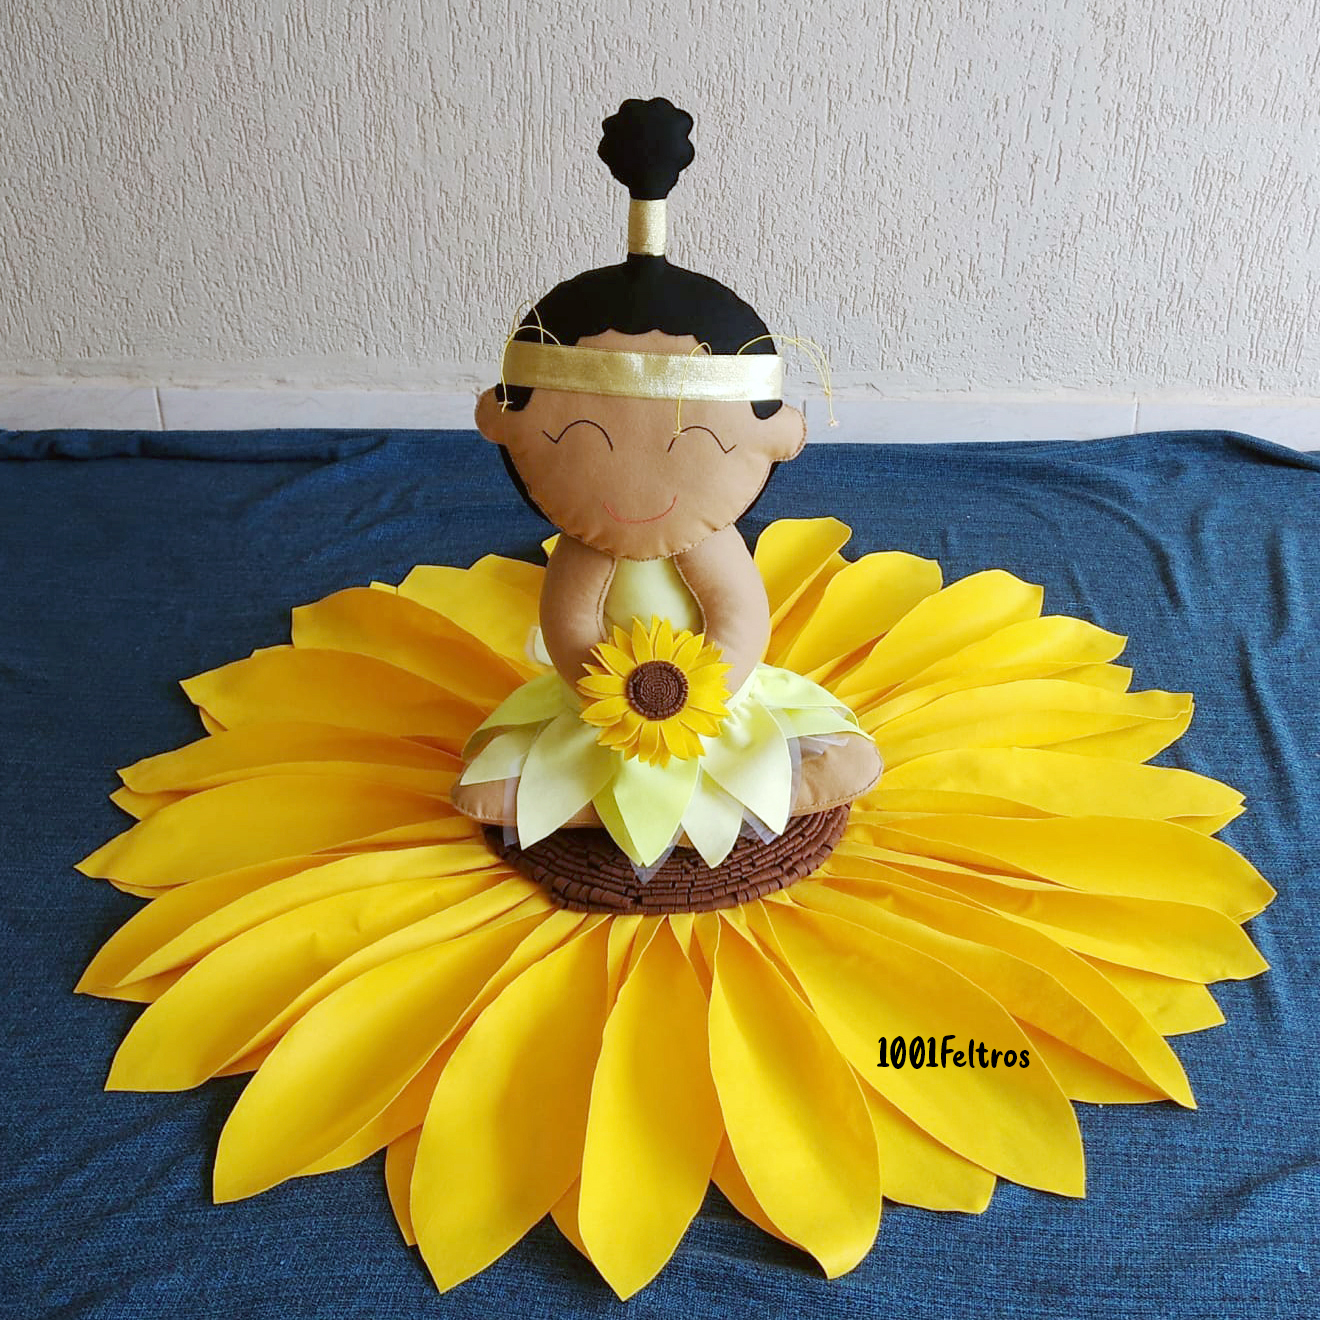 Topper de Bolo para Festa de Aniversário - Decoração - Topo Personalizado -  Tema Princesa Jujuba - Hora de Aventura